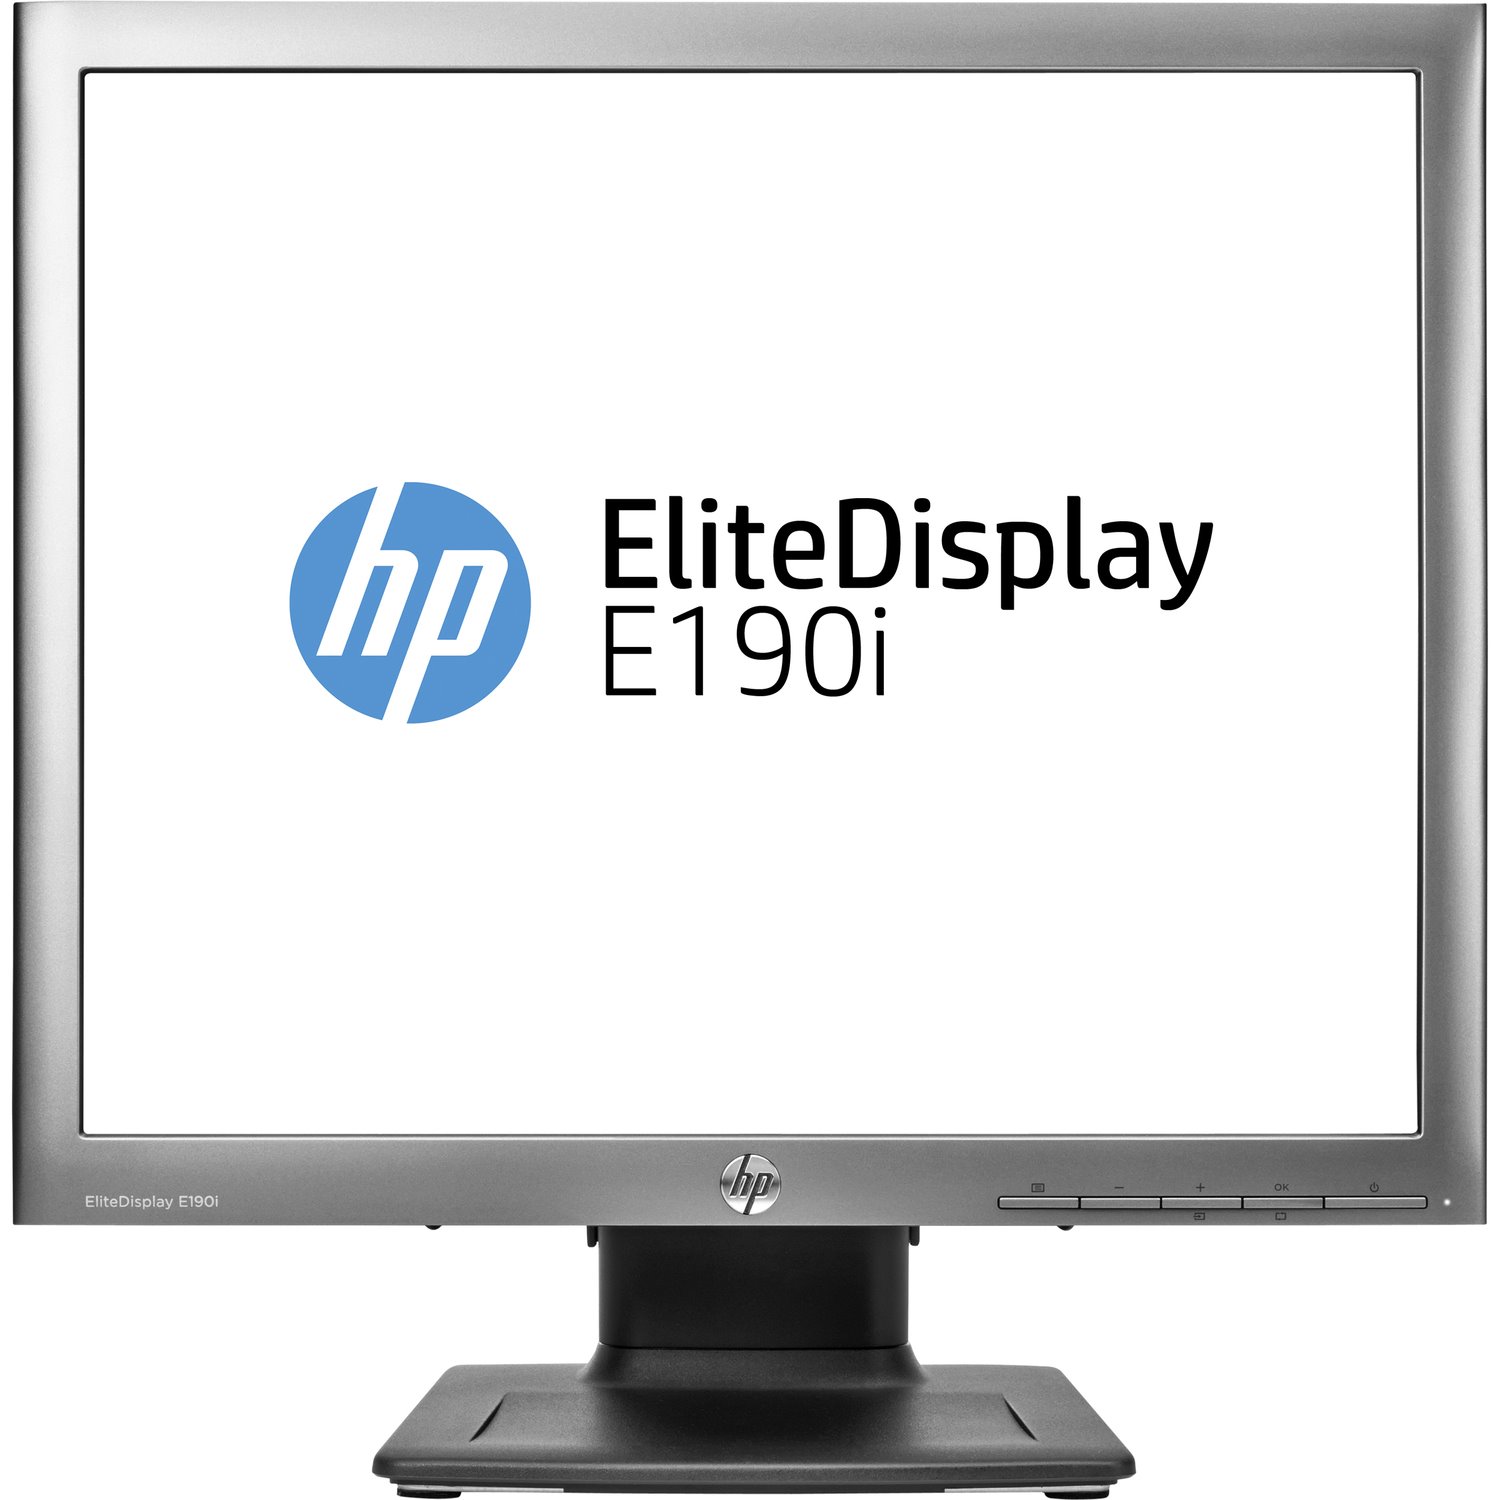 HP Elite E190i SXGA LCD Monitor - 5:4 - Black